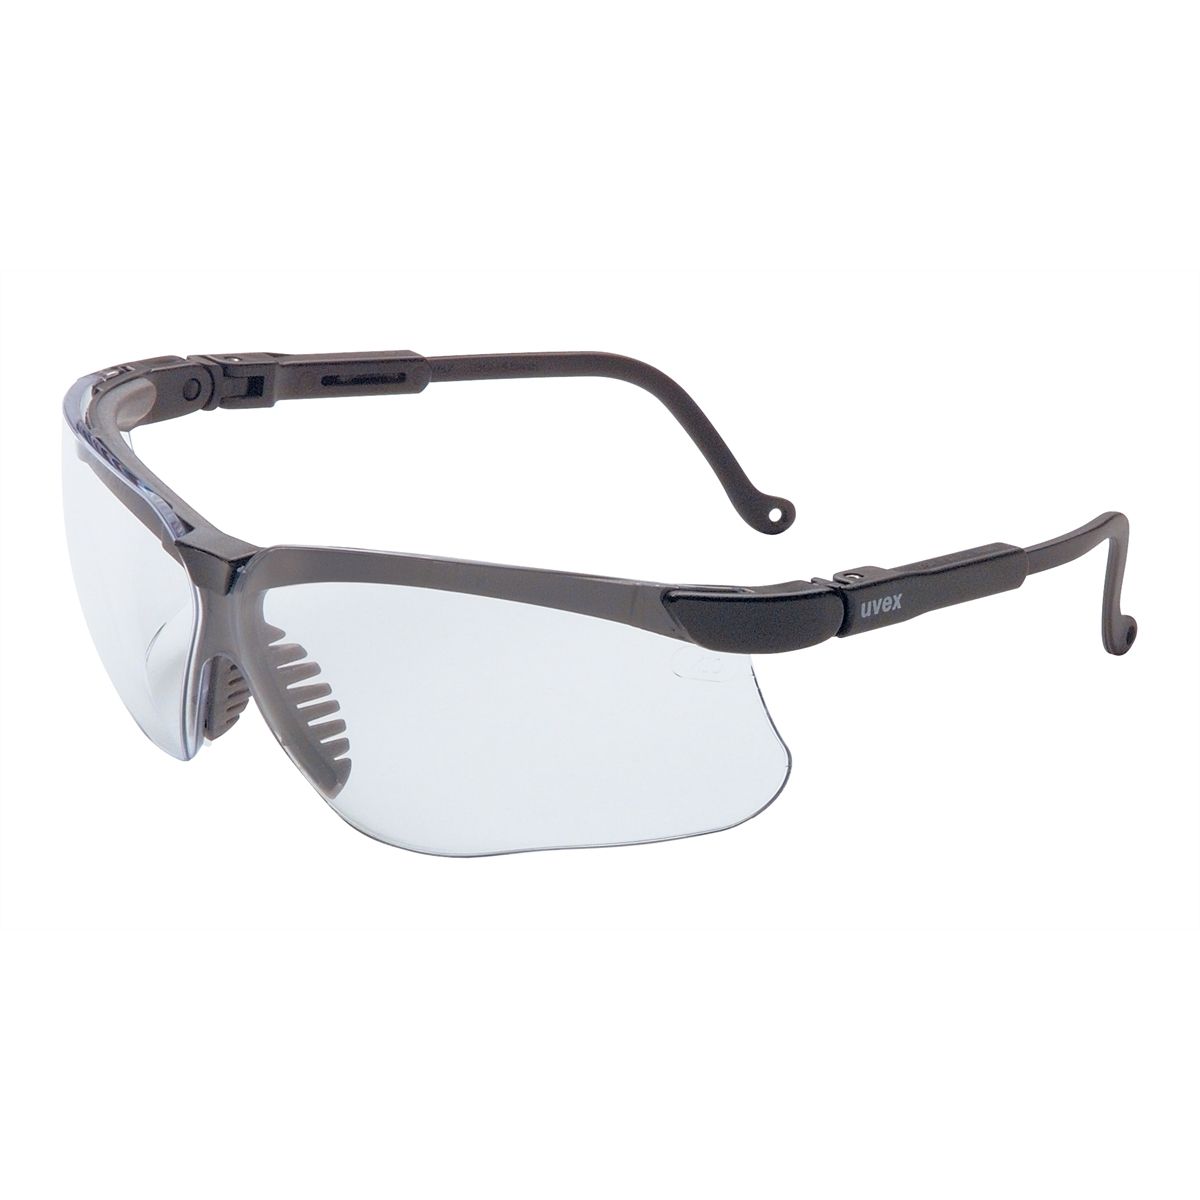 Genesis Glasses - Black Frame / Clear Lens w/ Anti-Fog Coating